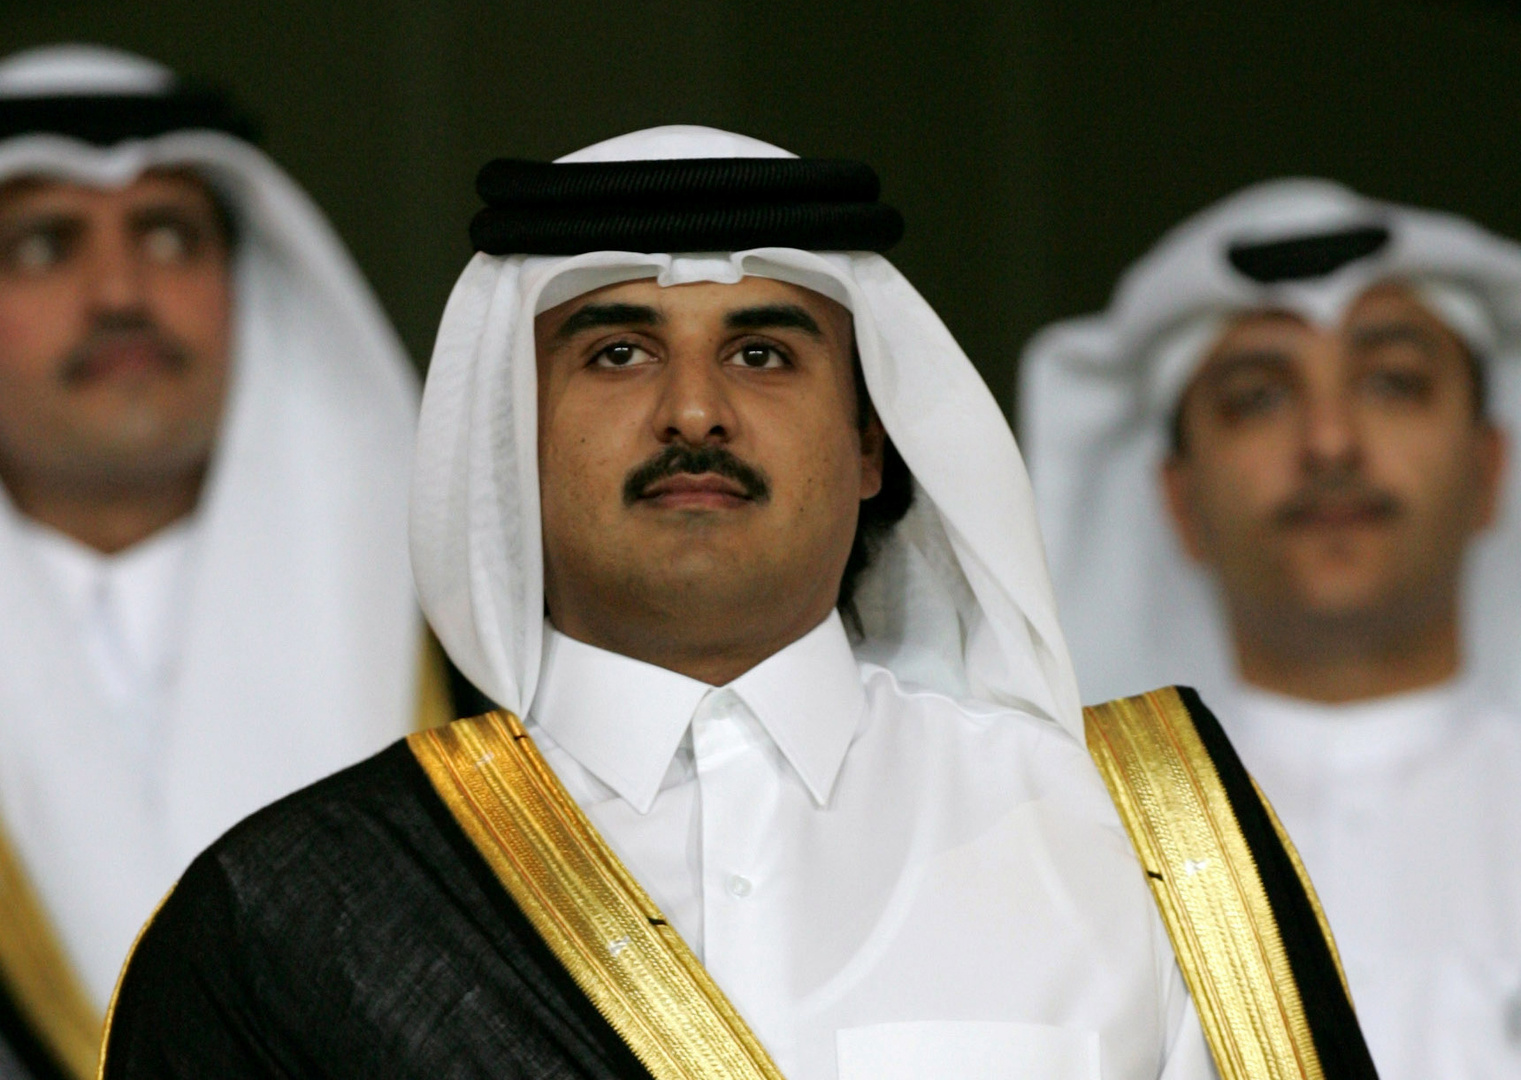 أمير قطر مفتتحا أعمال أول مجلس شورى منتخب: لن نسمح بالقبلية والعصبيات البغيضة التي تستخدم للهدم